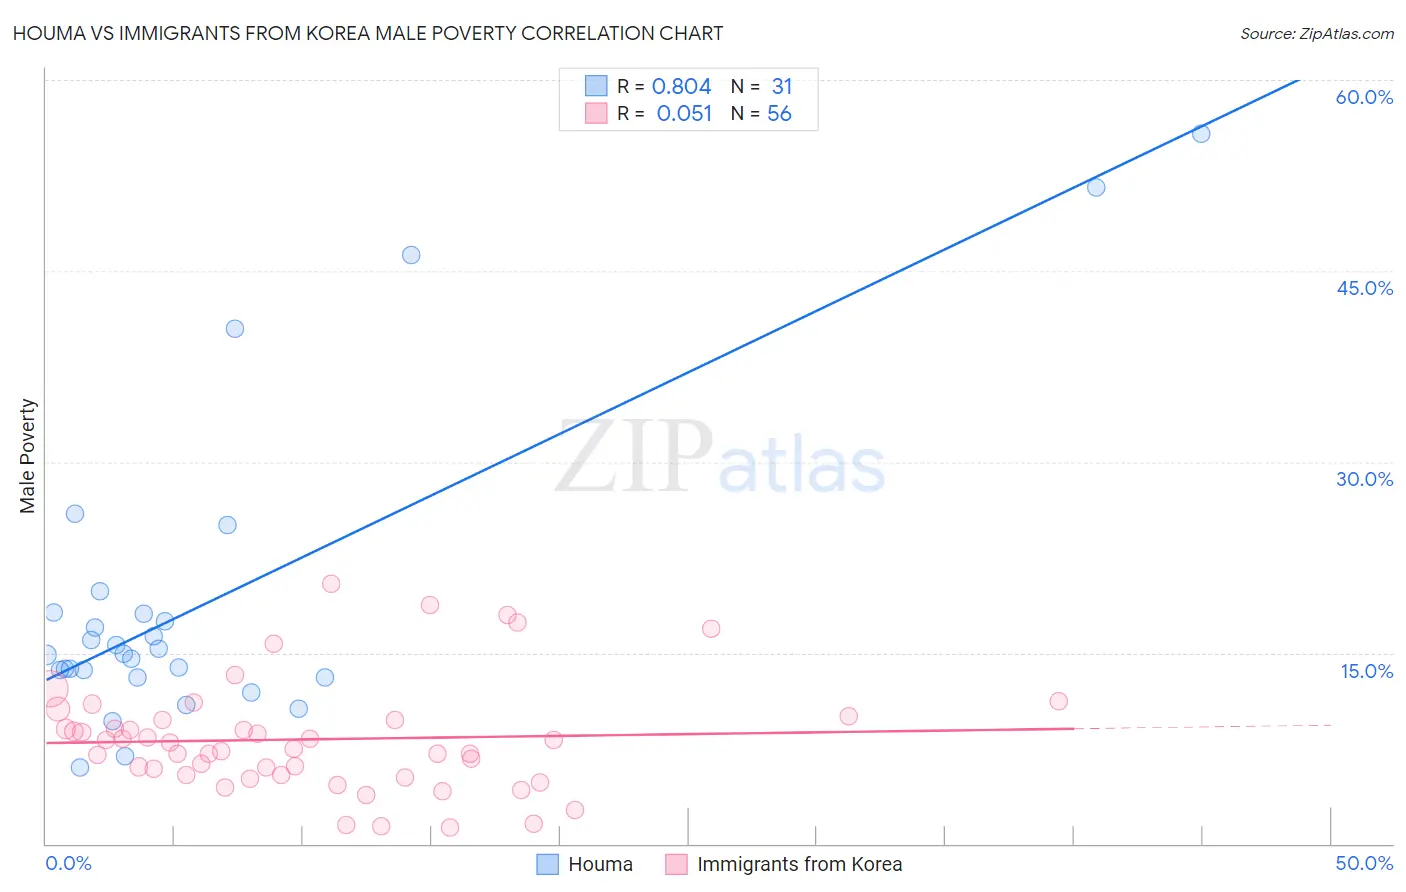 Houma vs Immigrants from Korea Male Poverty